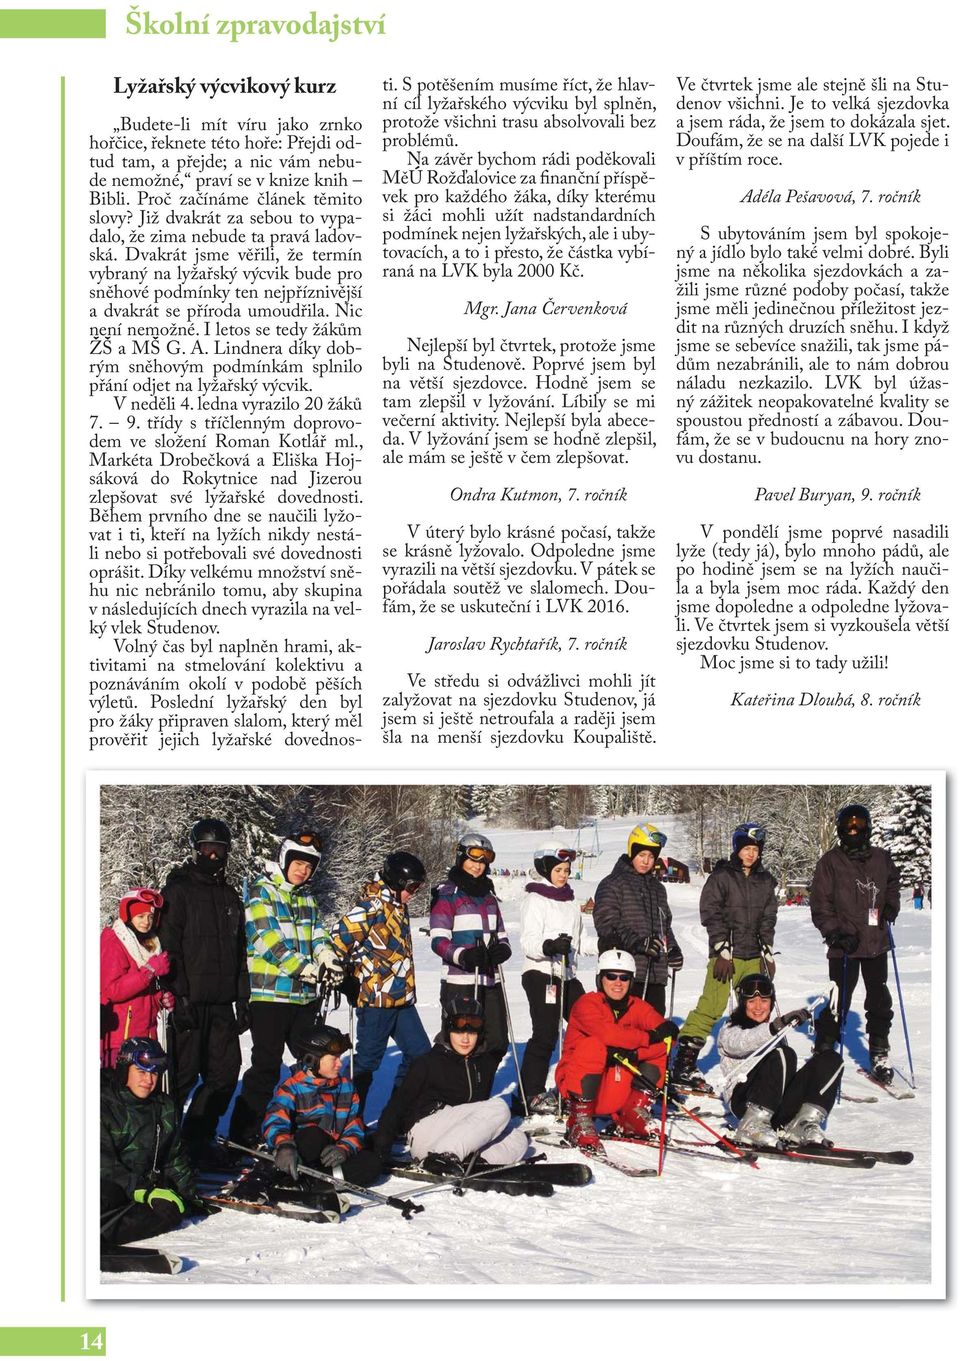 Dvakrát jsme věřili, že termín vybraný na lyžařský výcvik bude pro sněhové podmínky ten nejpříznivější a dvakrát se příroda umoudřila. Nic není nemožné. I letos se tedy žákům ŽŠ a MŠ G. A.